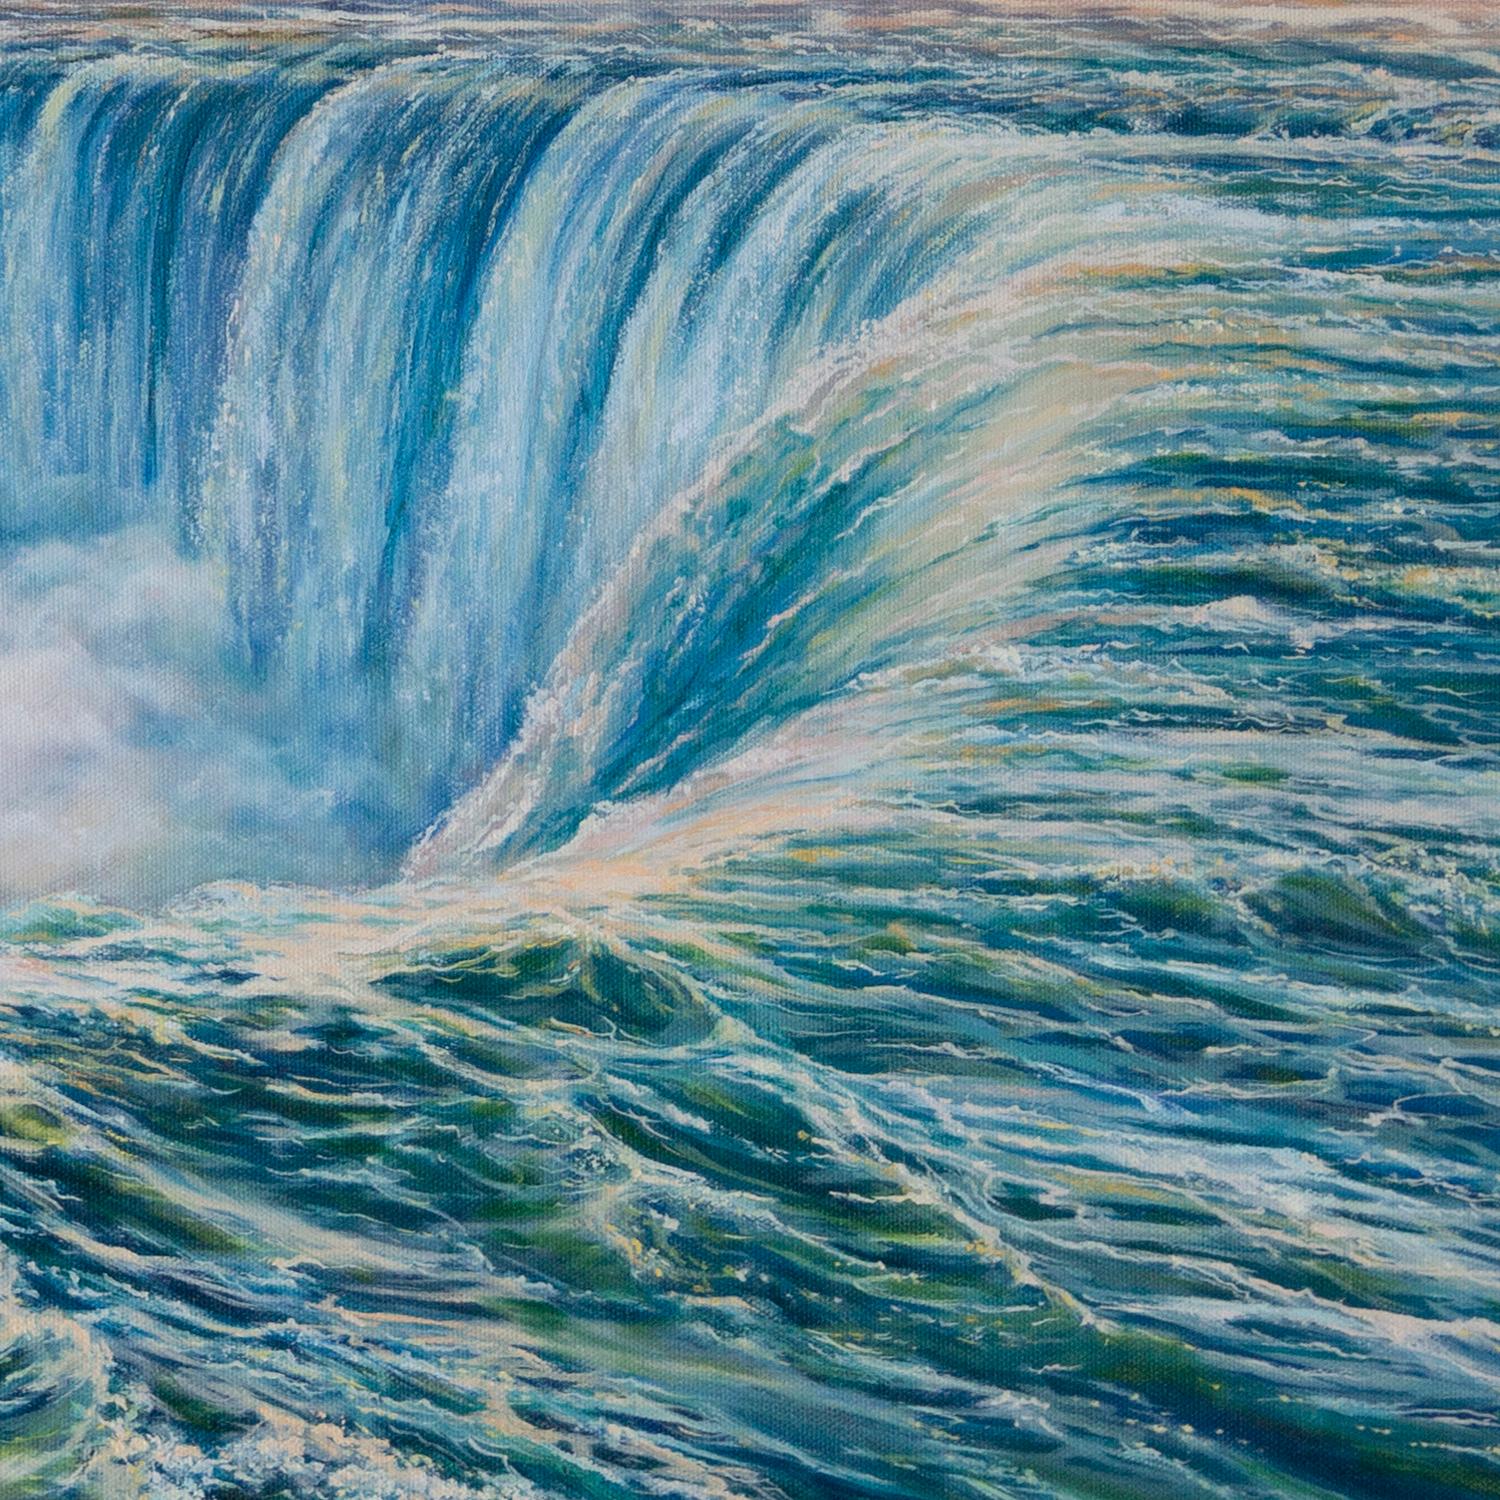 <p>Kommentare des Künstlers<br>Der atemberaubende Anblick der Niagarafälle fängt die faszinierende Verschmelzung der Wasserfälle und des bezaubernden Himmels in der Dämmerung ein. Laut der Künstlerin Olena Nabilsky ist der Wunsch, dieses Naturwunder